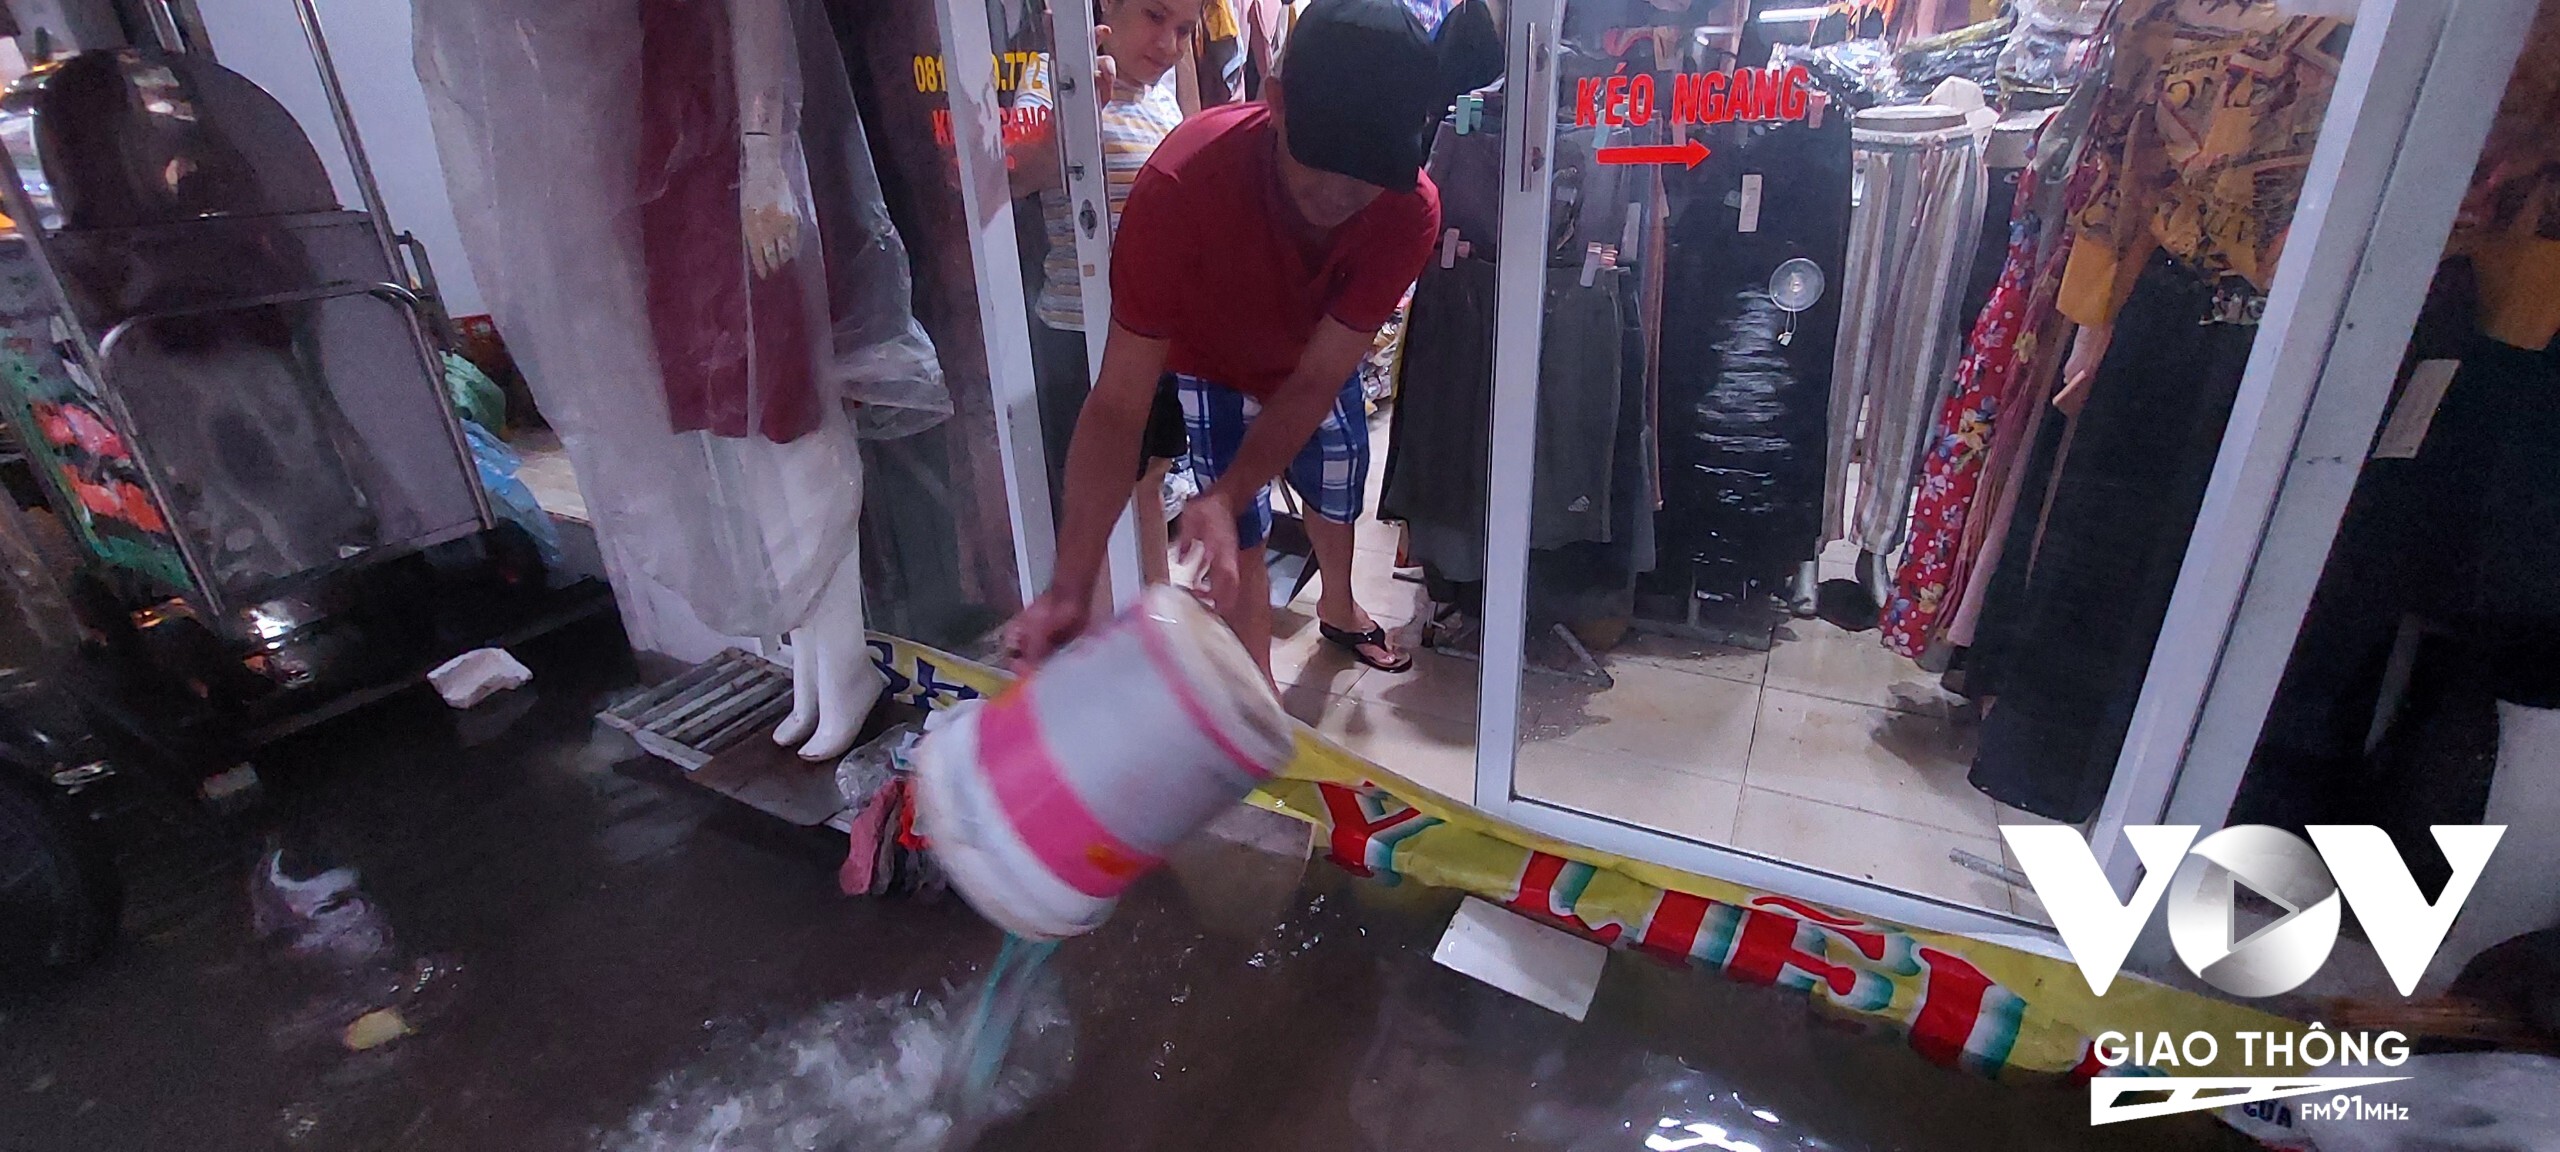 Cửa hàng thời trang ở đường Lê Đại Hành - Phường 1 bị nước tràn vào nhà.